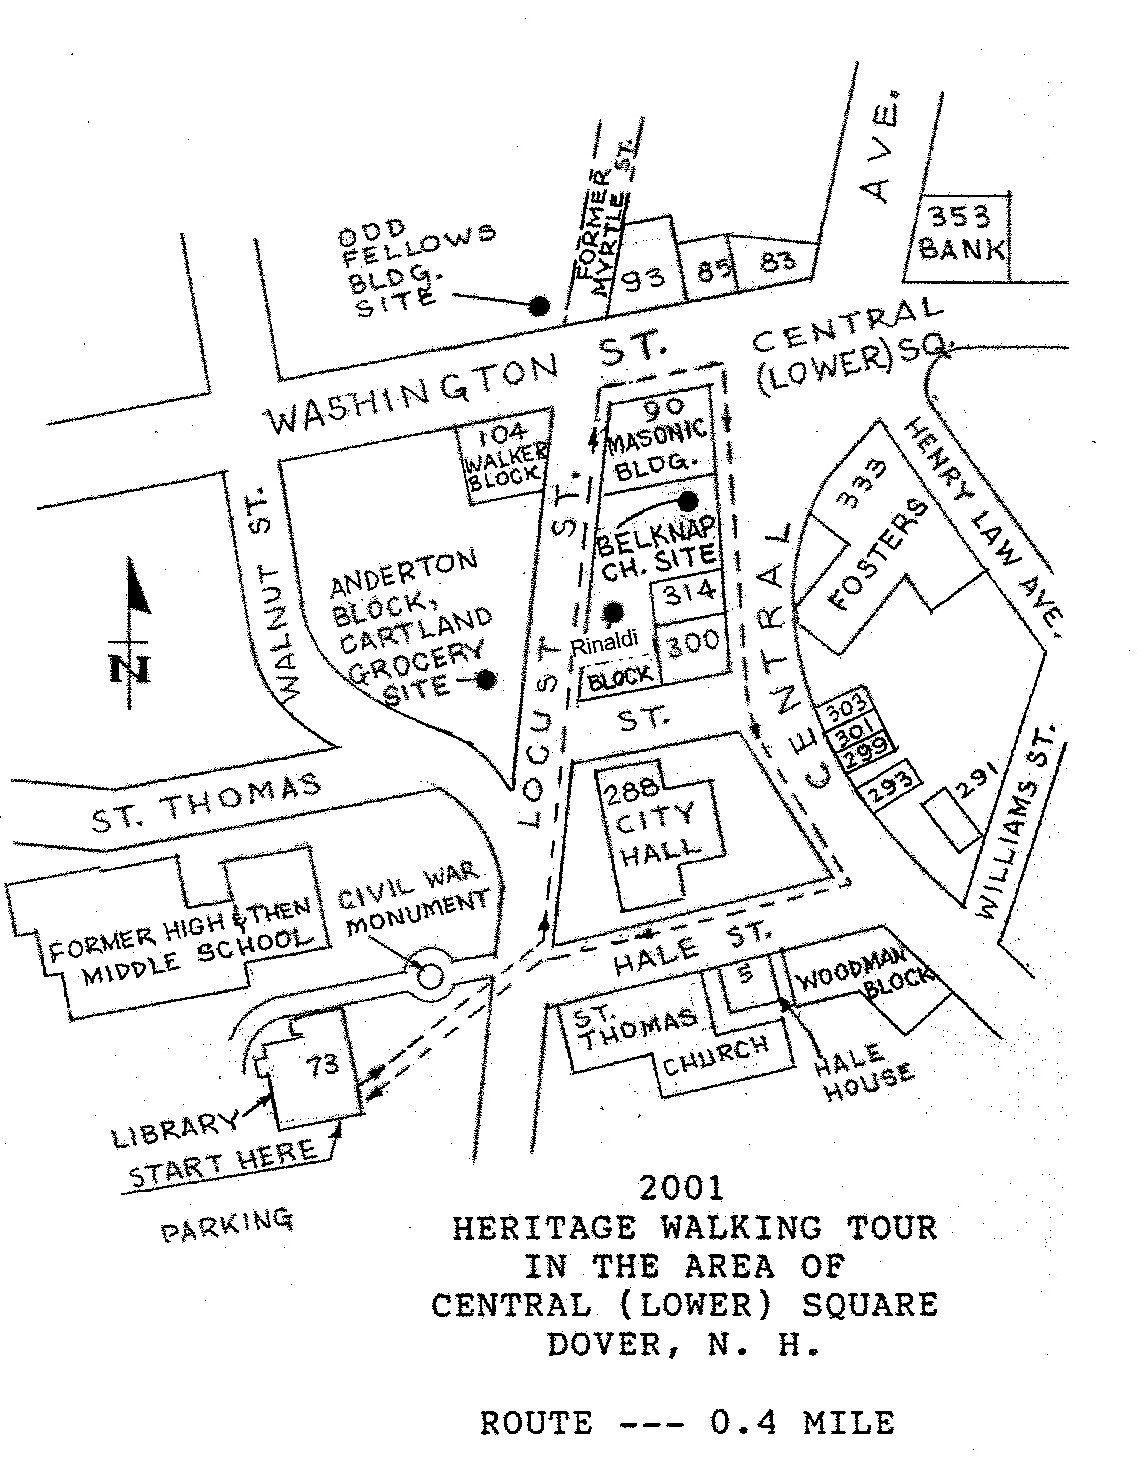 2001 Heritage Walk Tour Map